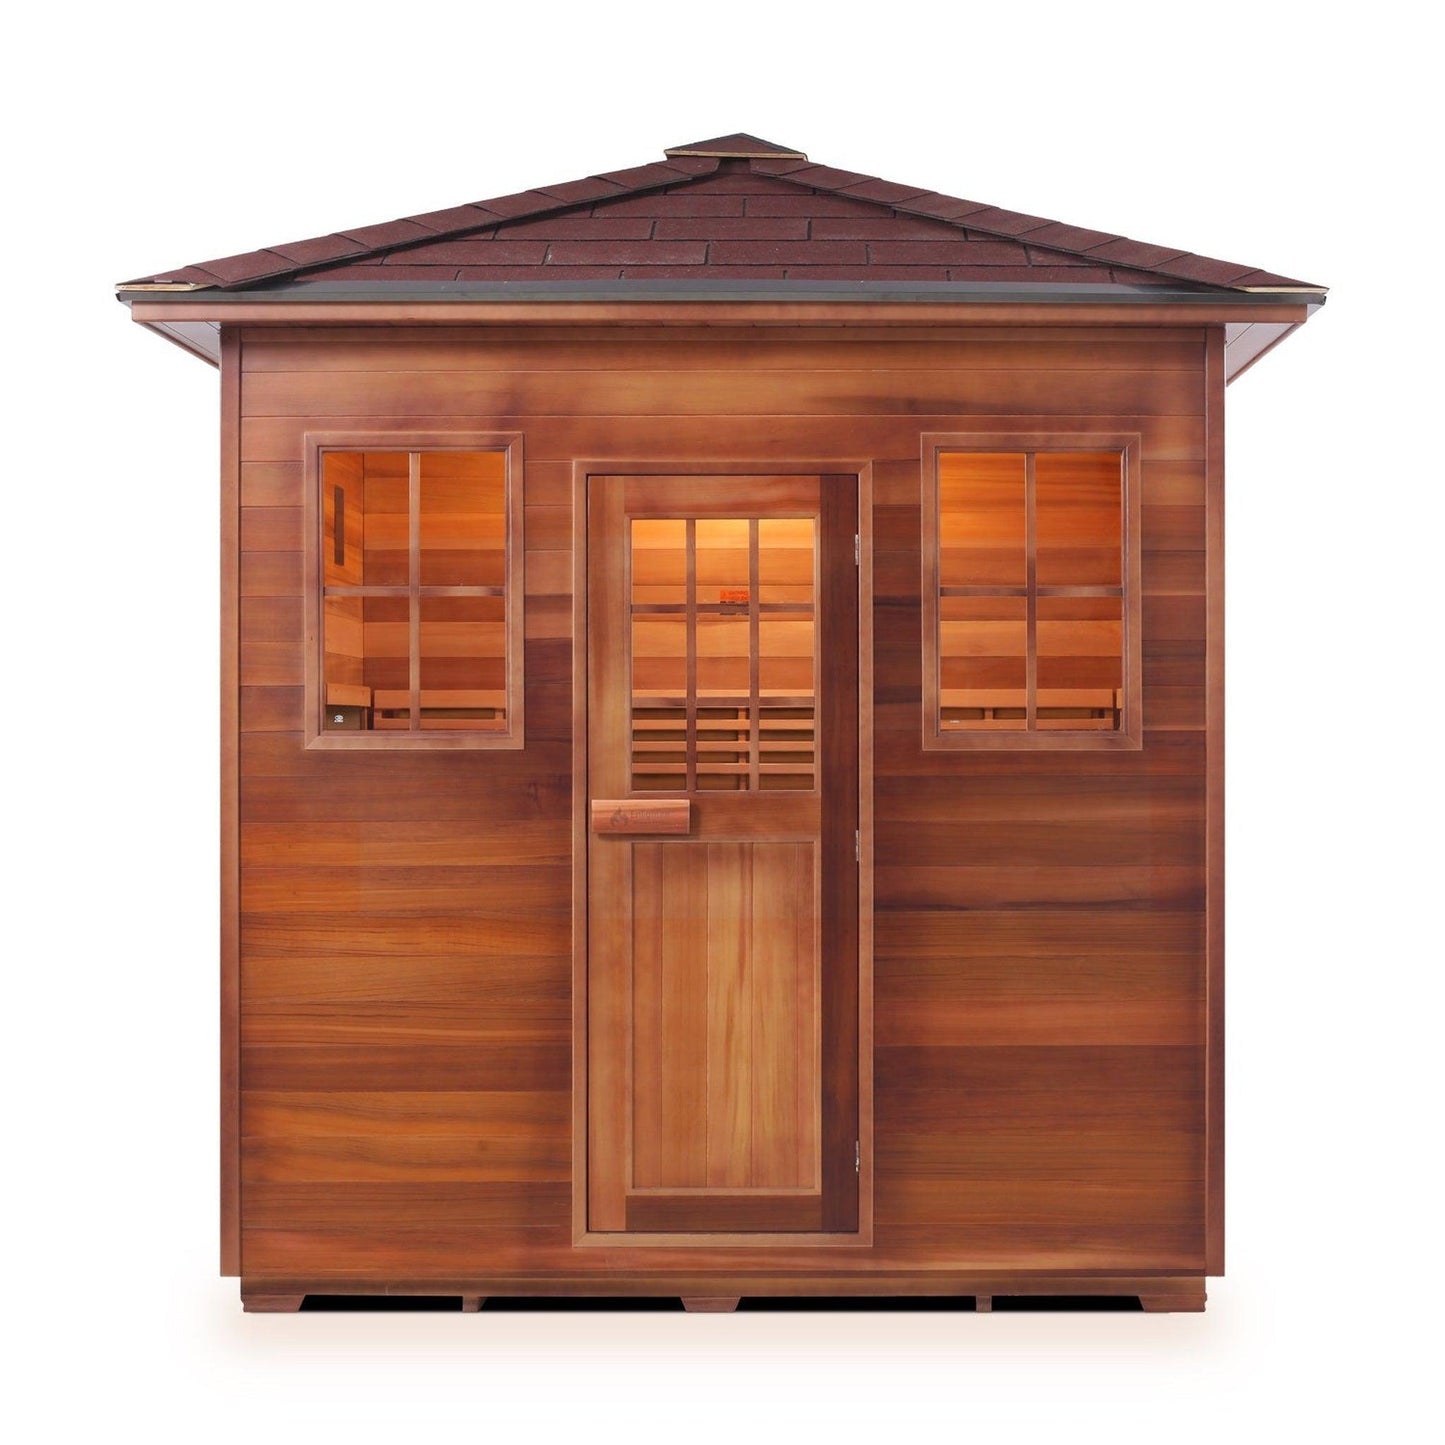 Enlighten SaunaTerra MoonLight 5-Person Peak Roof Dry Traditional Outdoor Sauna